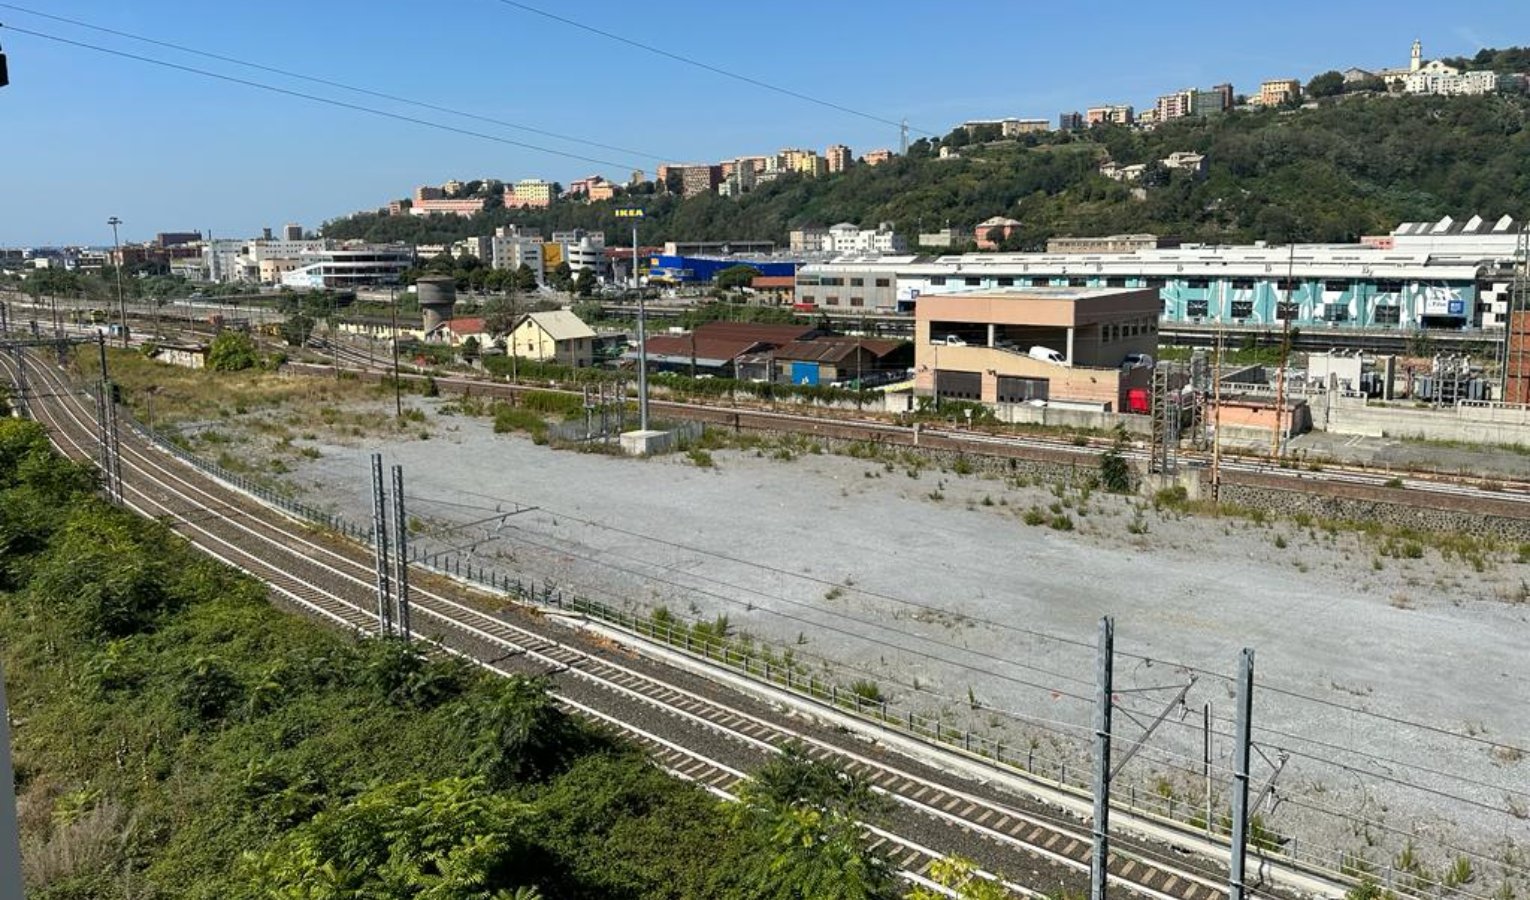 Lavori ferroviari in Valpolcevera, martedì consiglio comunale monotematico